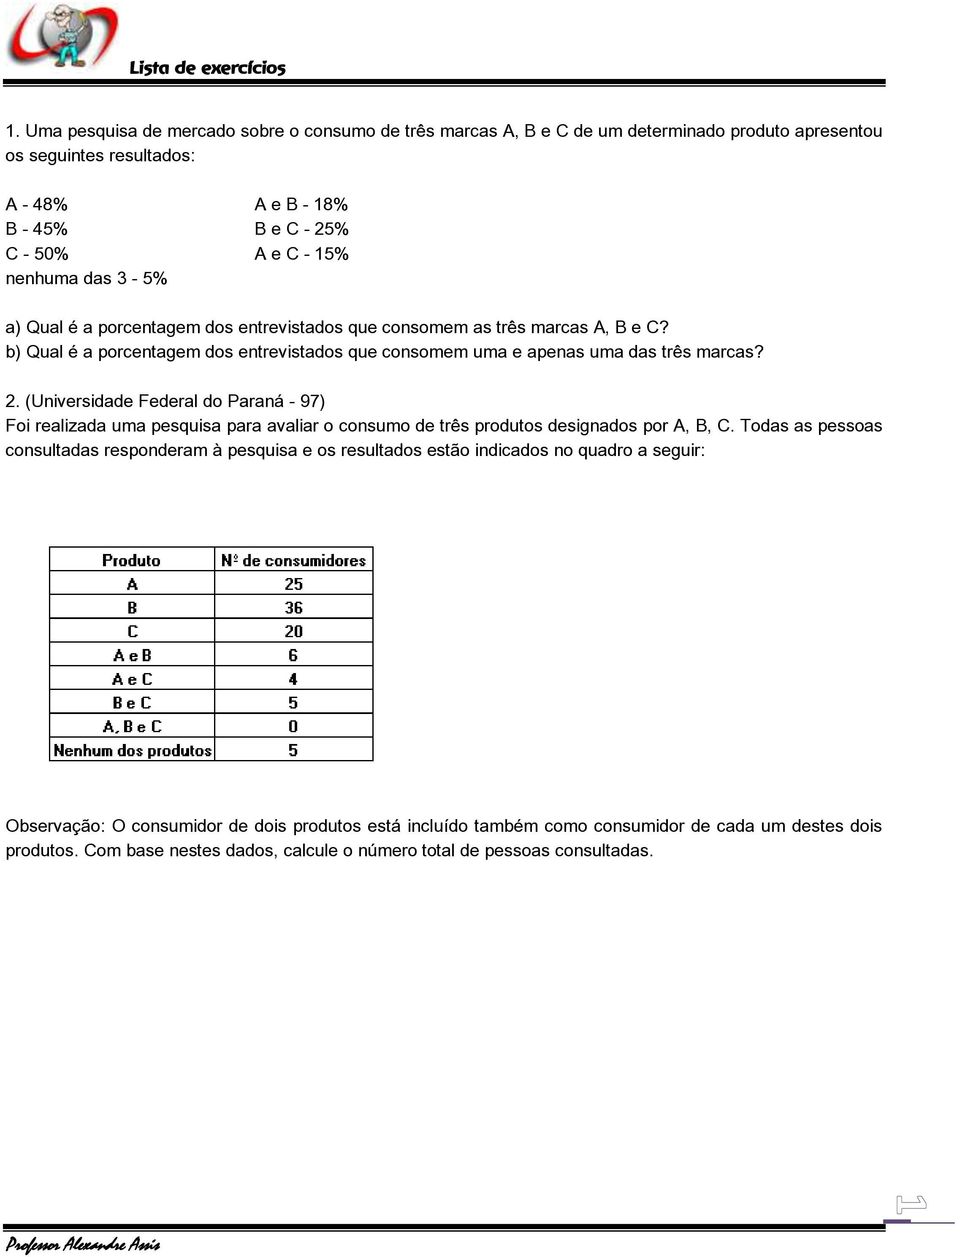 (Universidade Federal do Paraná - 97) Foi realizada uma pesquisa para avaliar o consumo de três produtos designados por A, B, C.